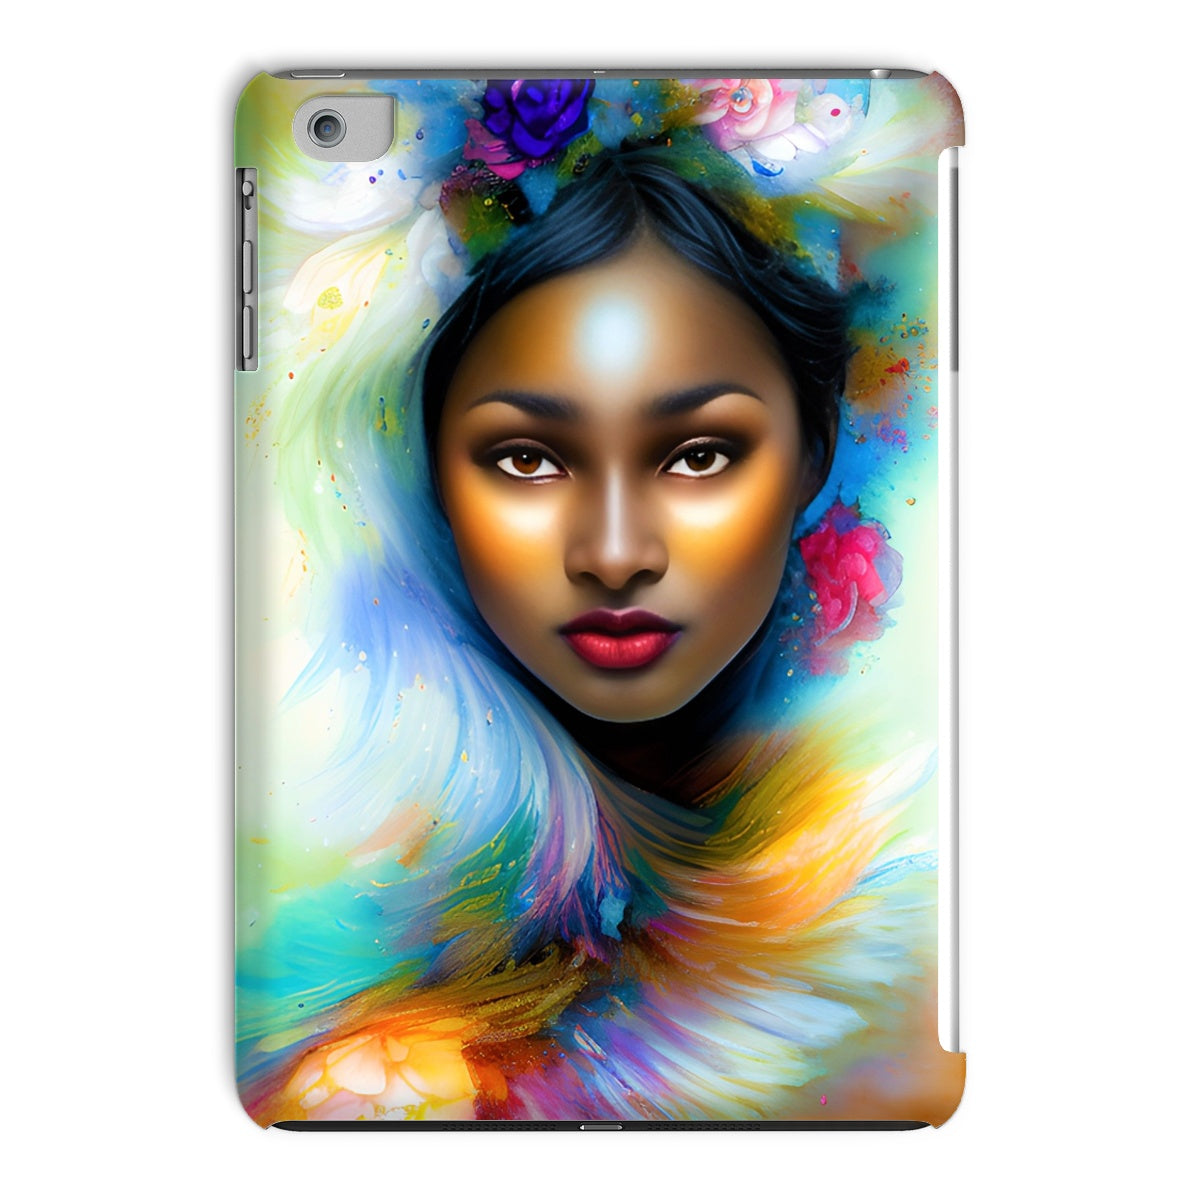 Goddess Surreal Tablet Cases